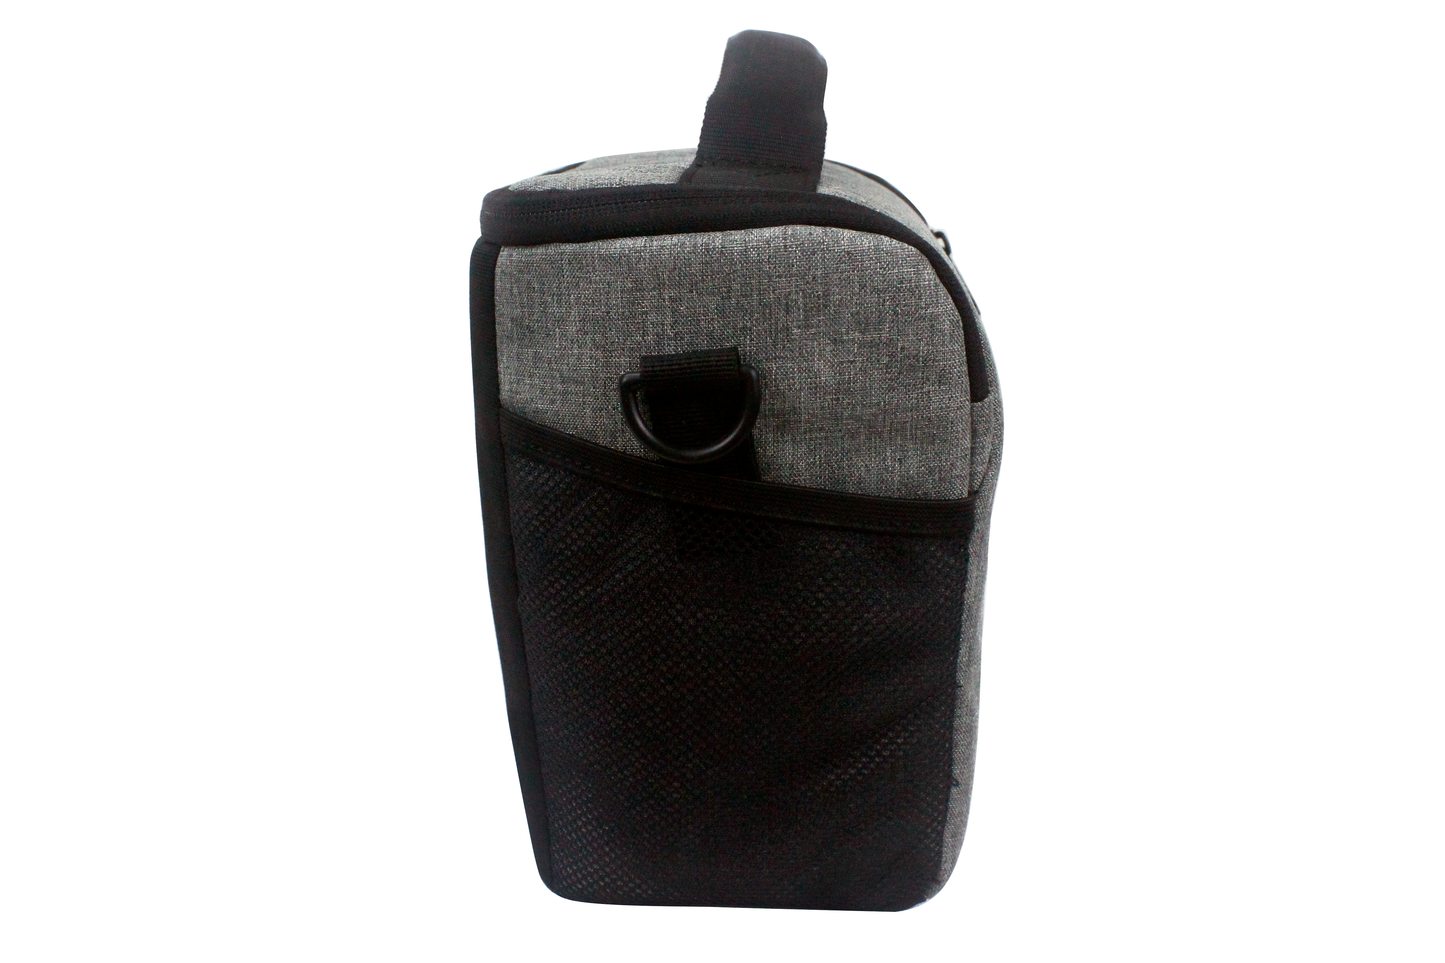 Samurai Bag S-CAM02 (S/M/L) Grey Shoulder bag